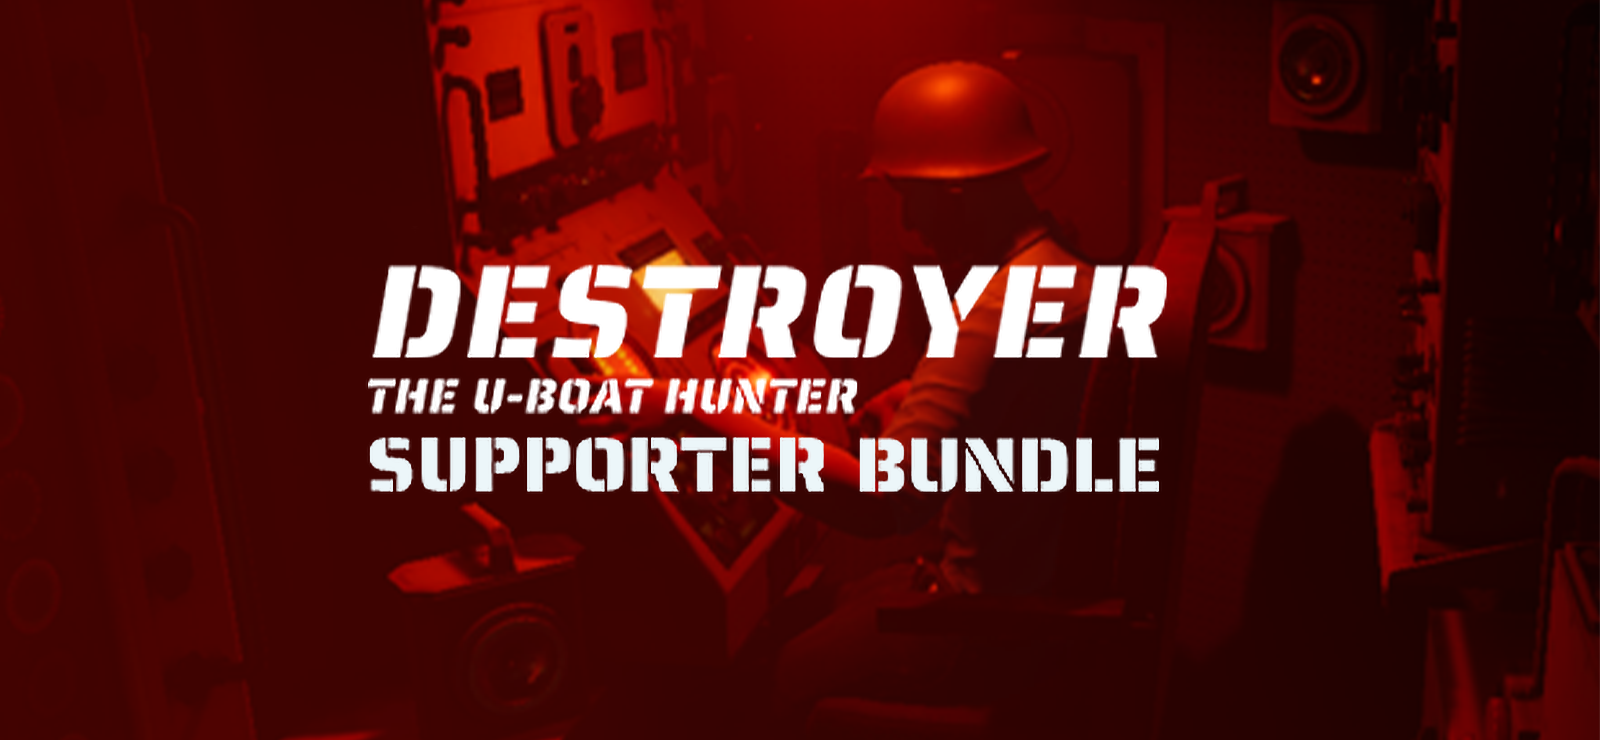 Destroyer: The U-Boat Hunter Supporter Bundle